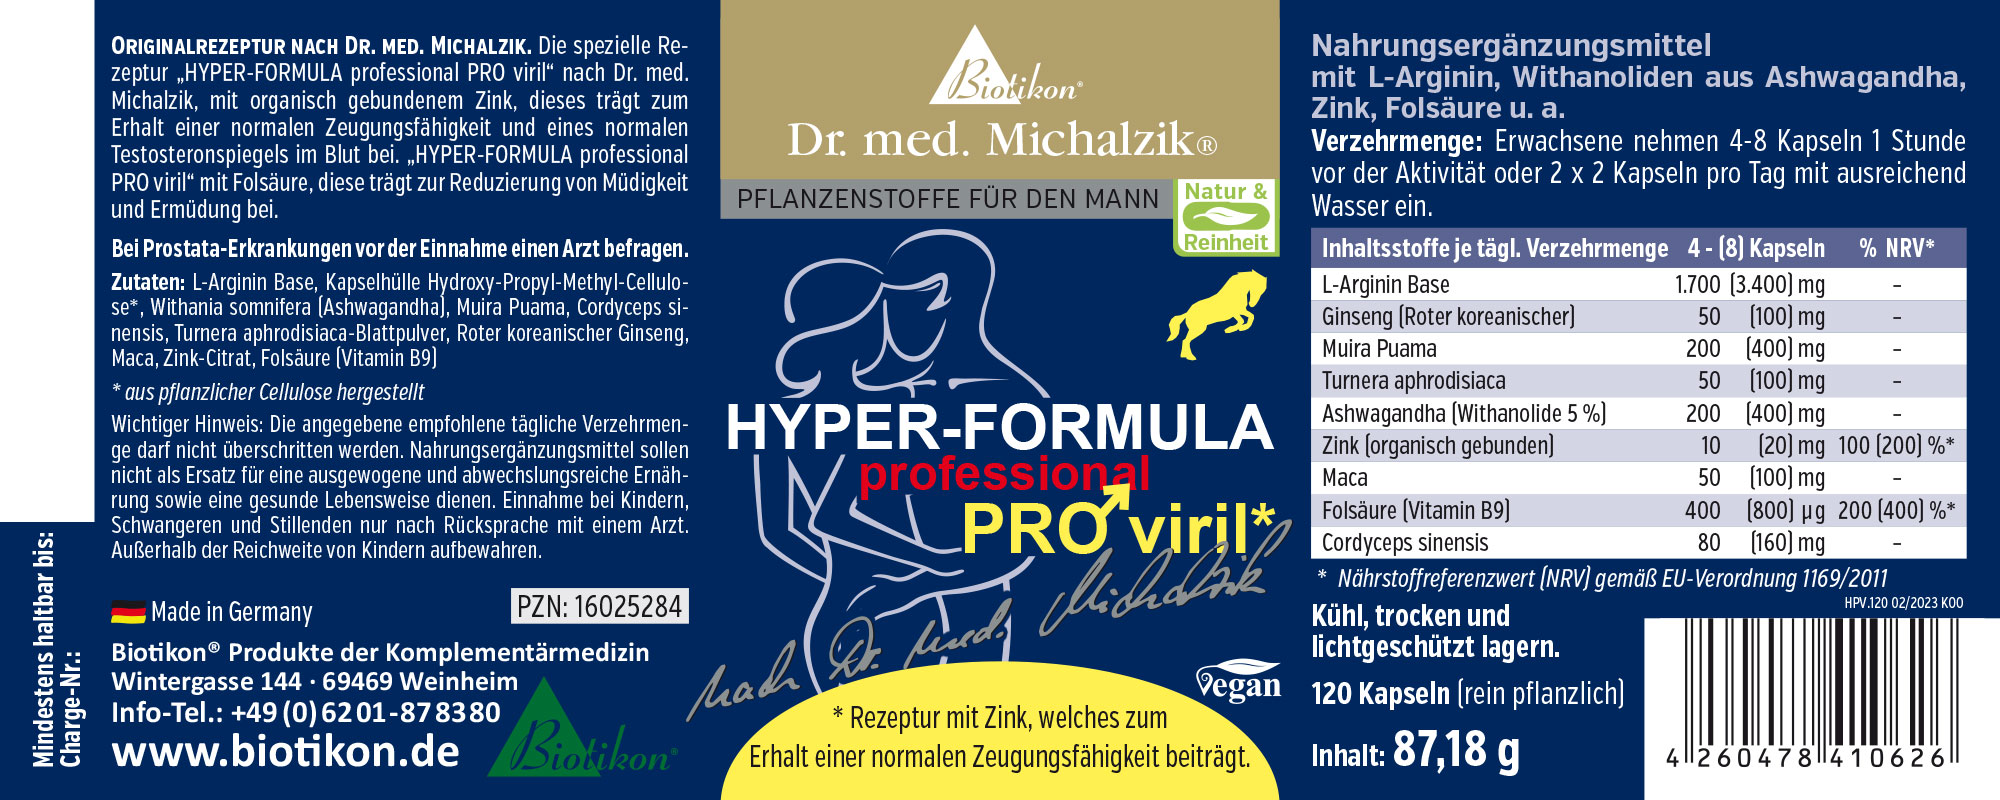 Hyper PRO viril stamina by Dr. med. Michalzik, Set of 2